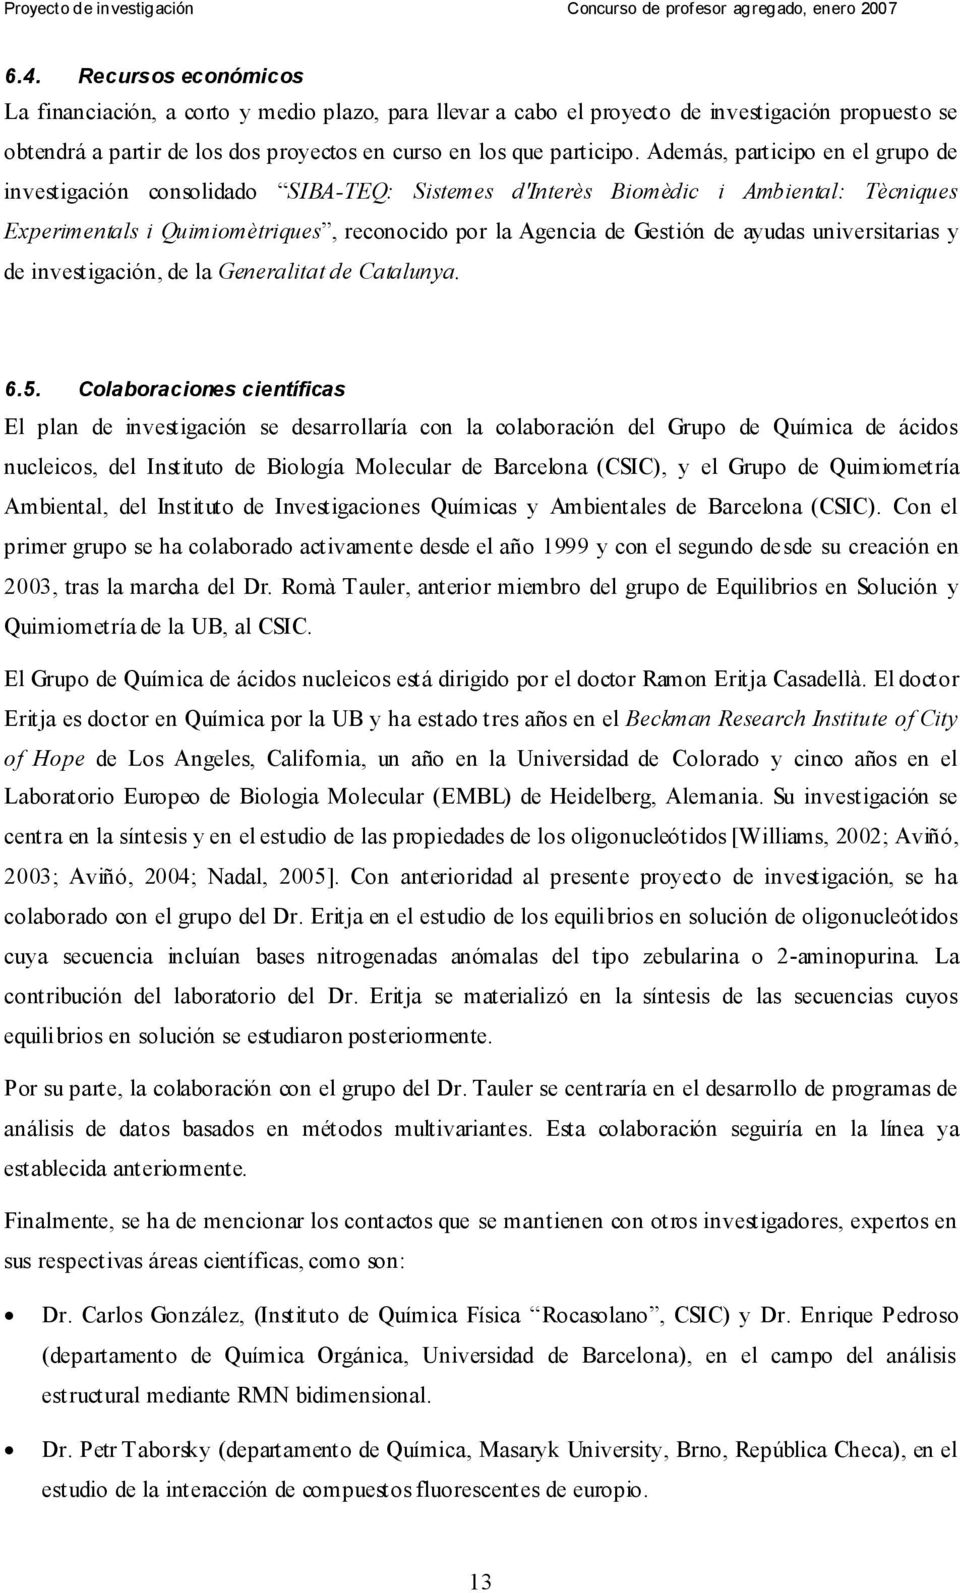 universitarias y de investigación, de la Generalitat de Catalunya. 6.5.